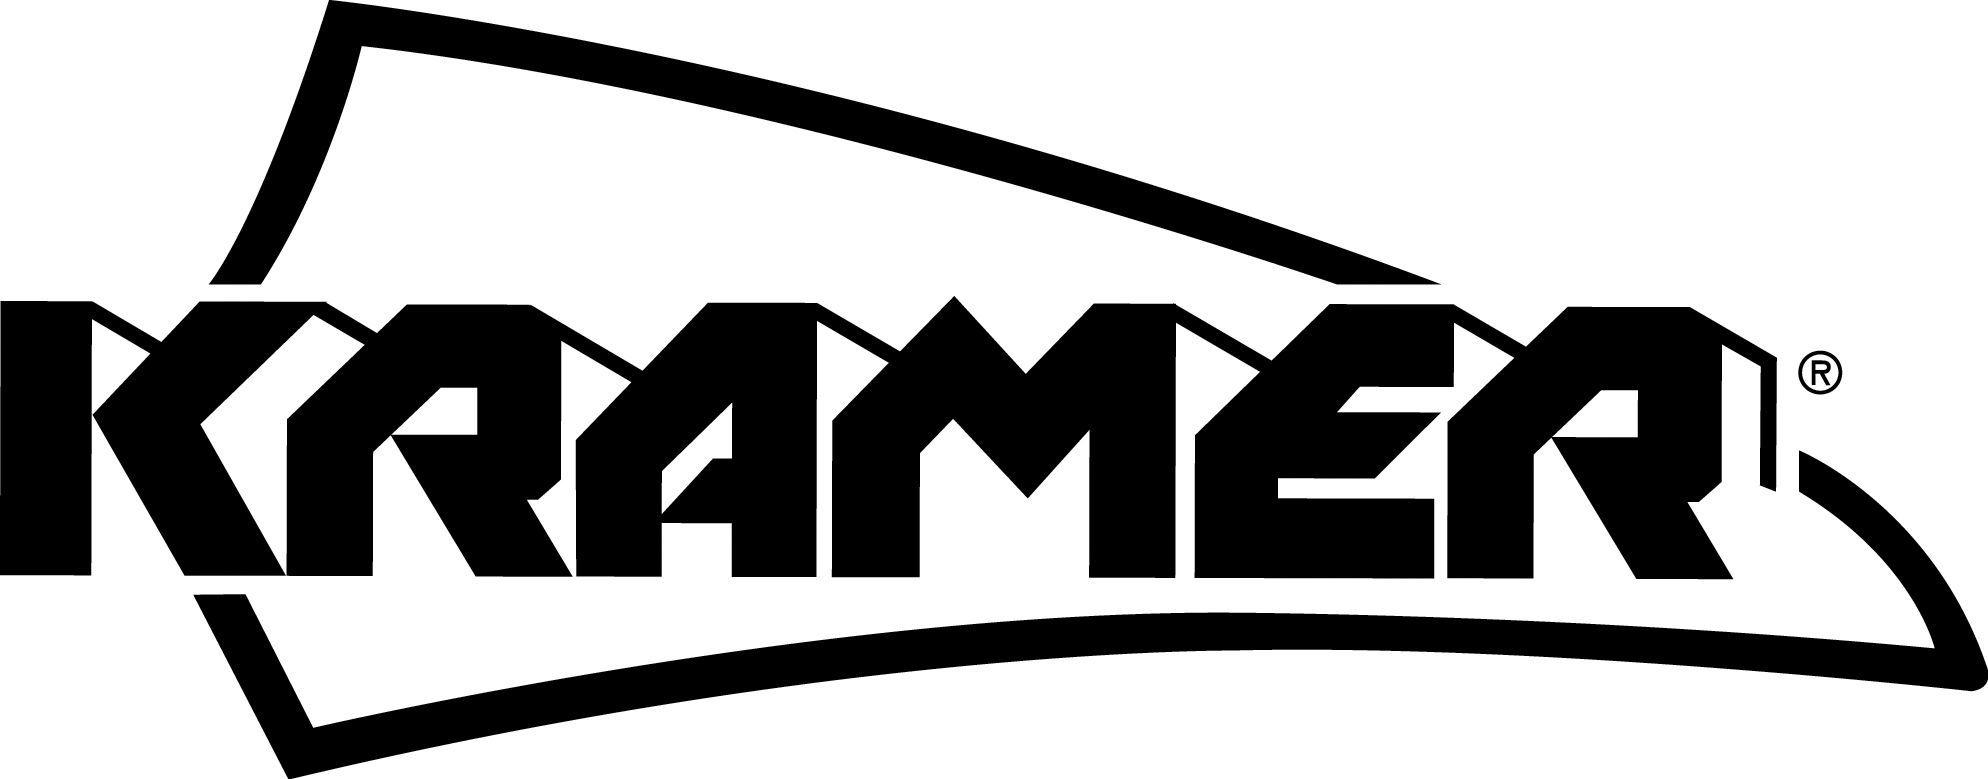 Kramer Logo - Kramer | Logos | Logos, Nike logo, Atari logo